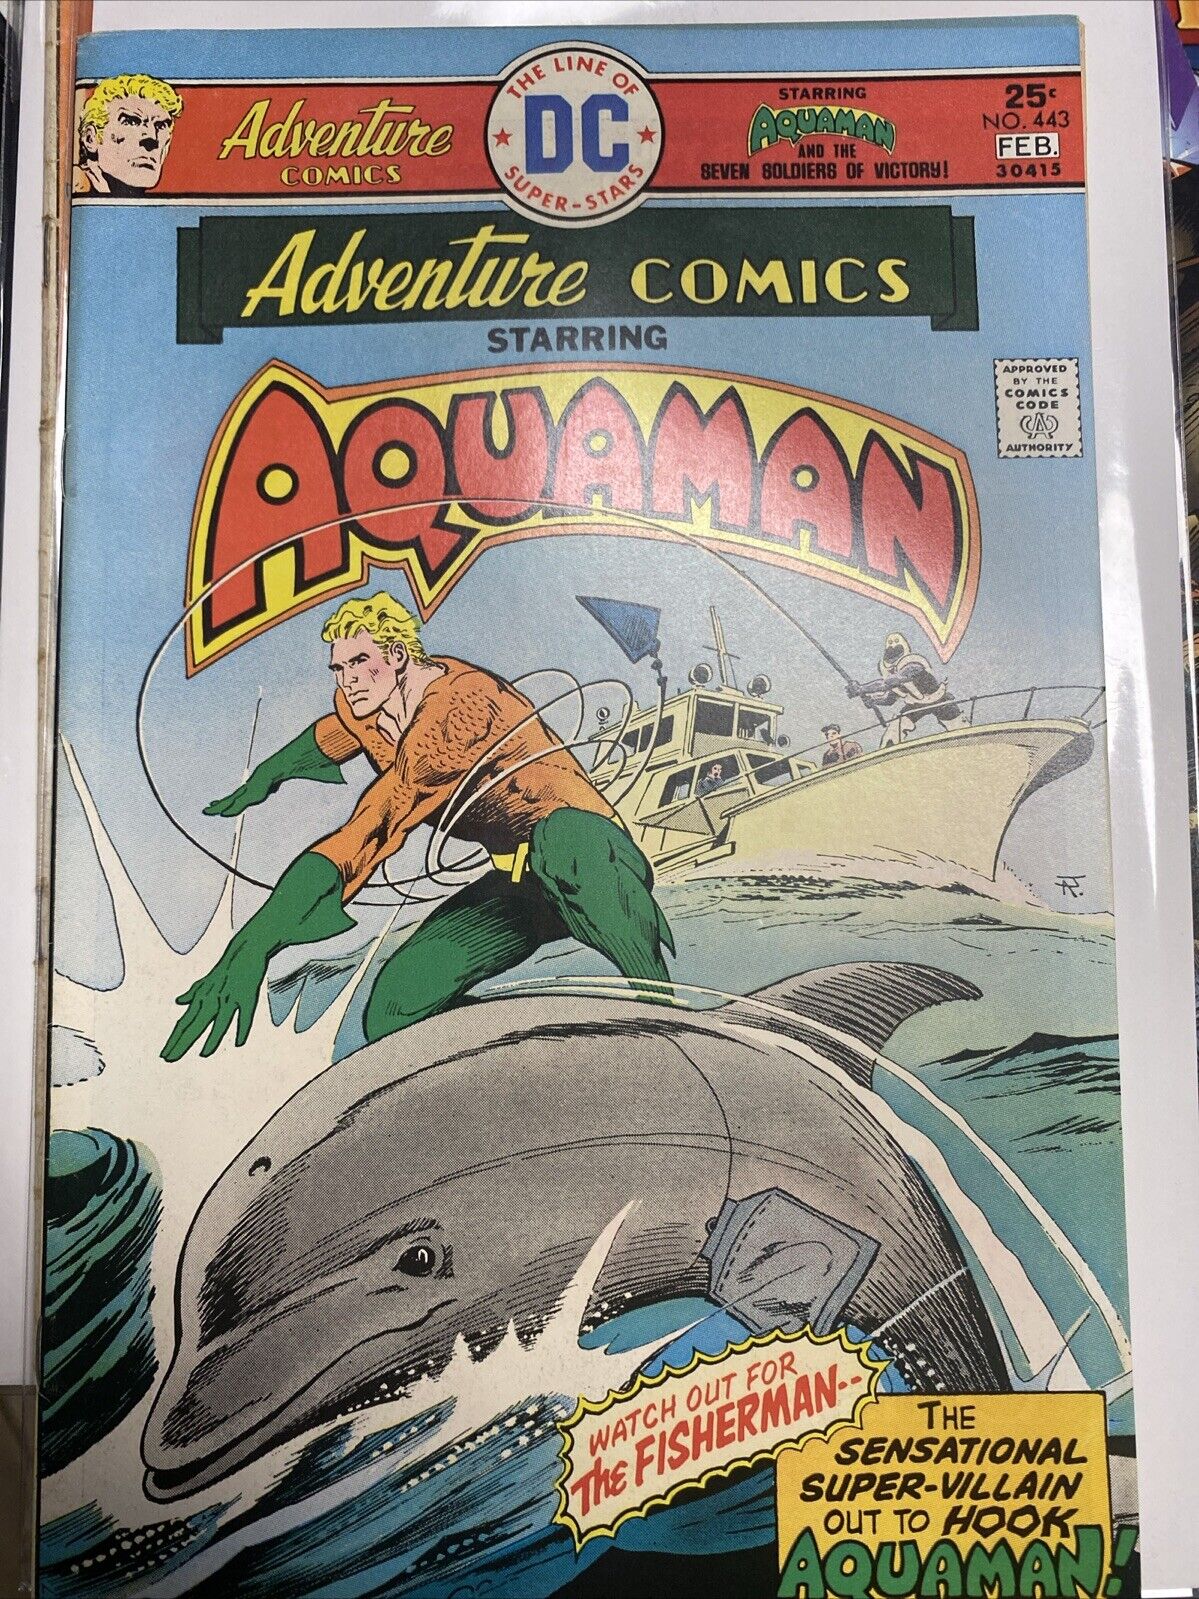 DC Comics - Aquaman #443 - Feb 76 - Near Mint